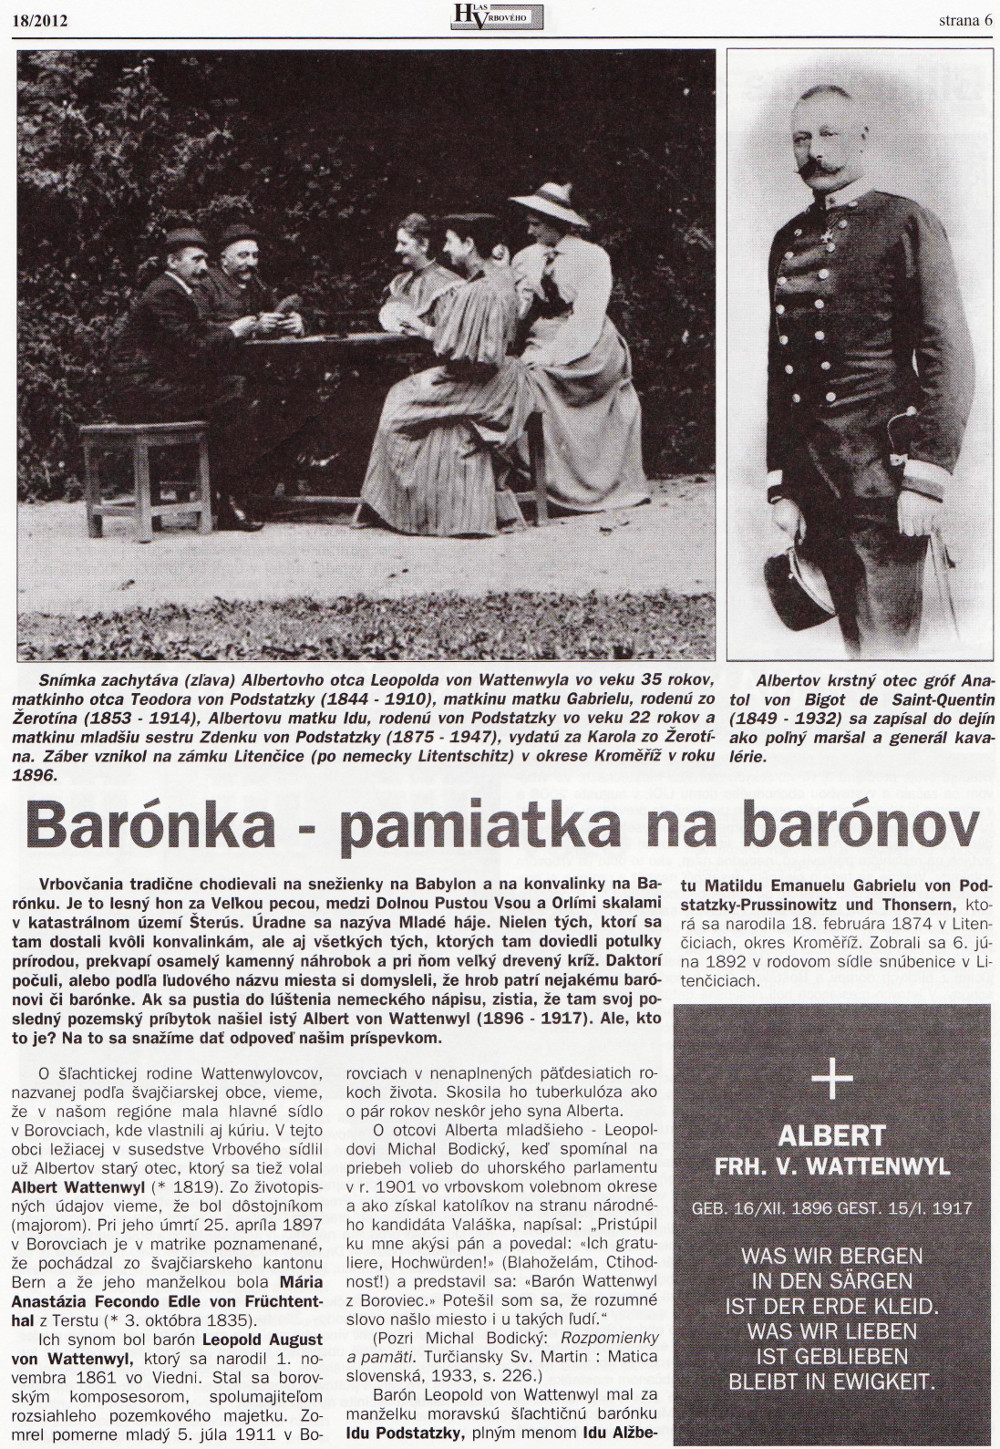 Hlas Vrbového 18/2012, strana 6